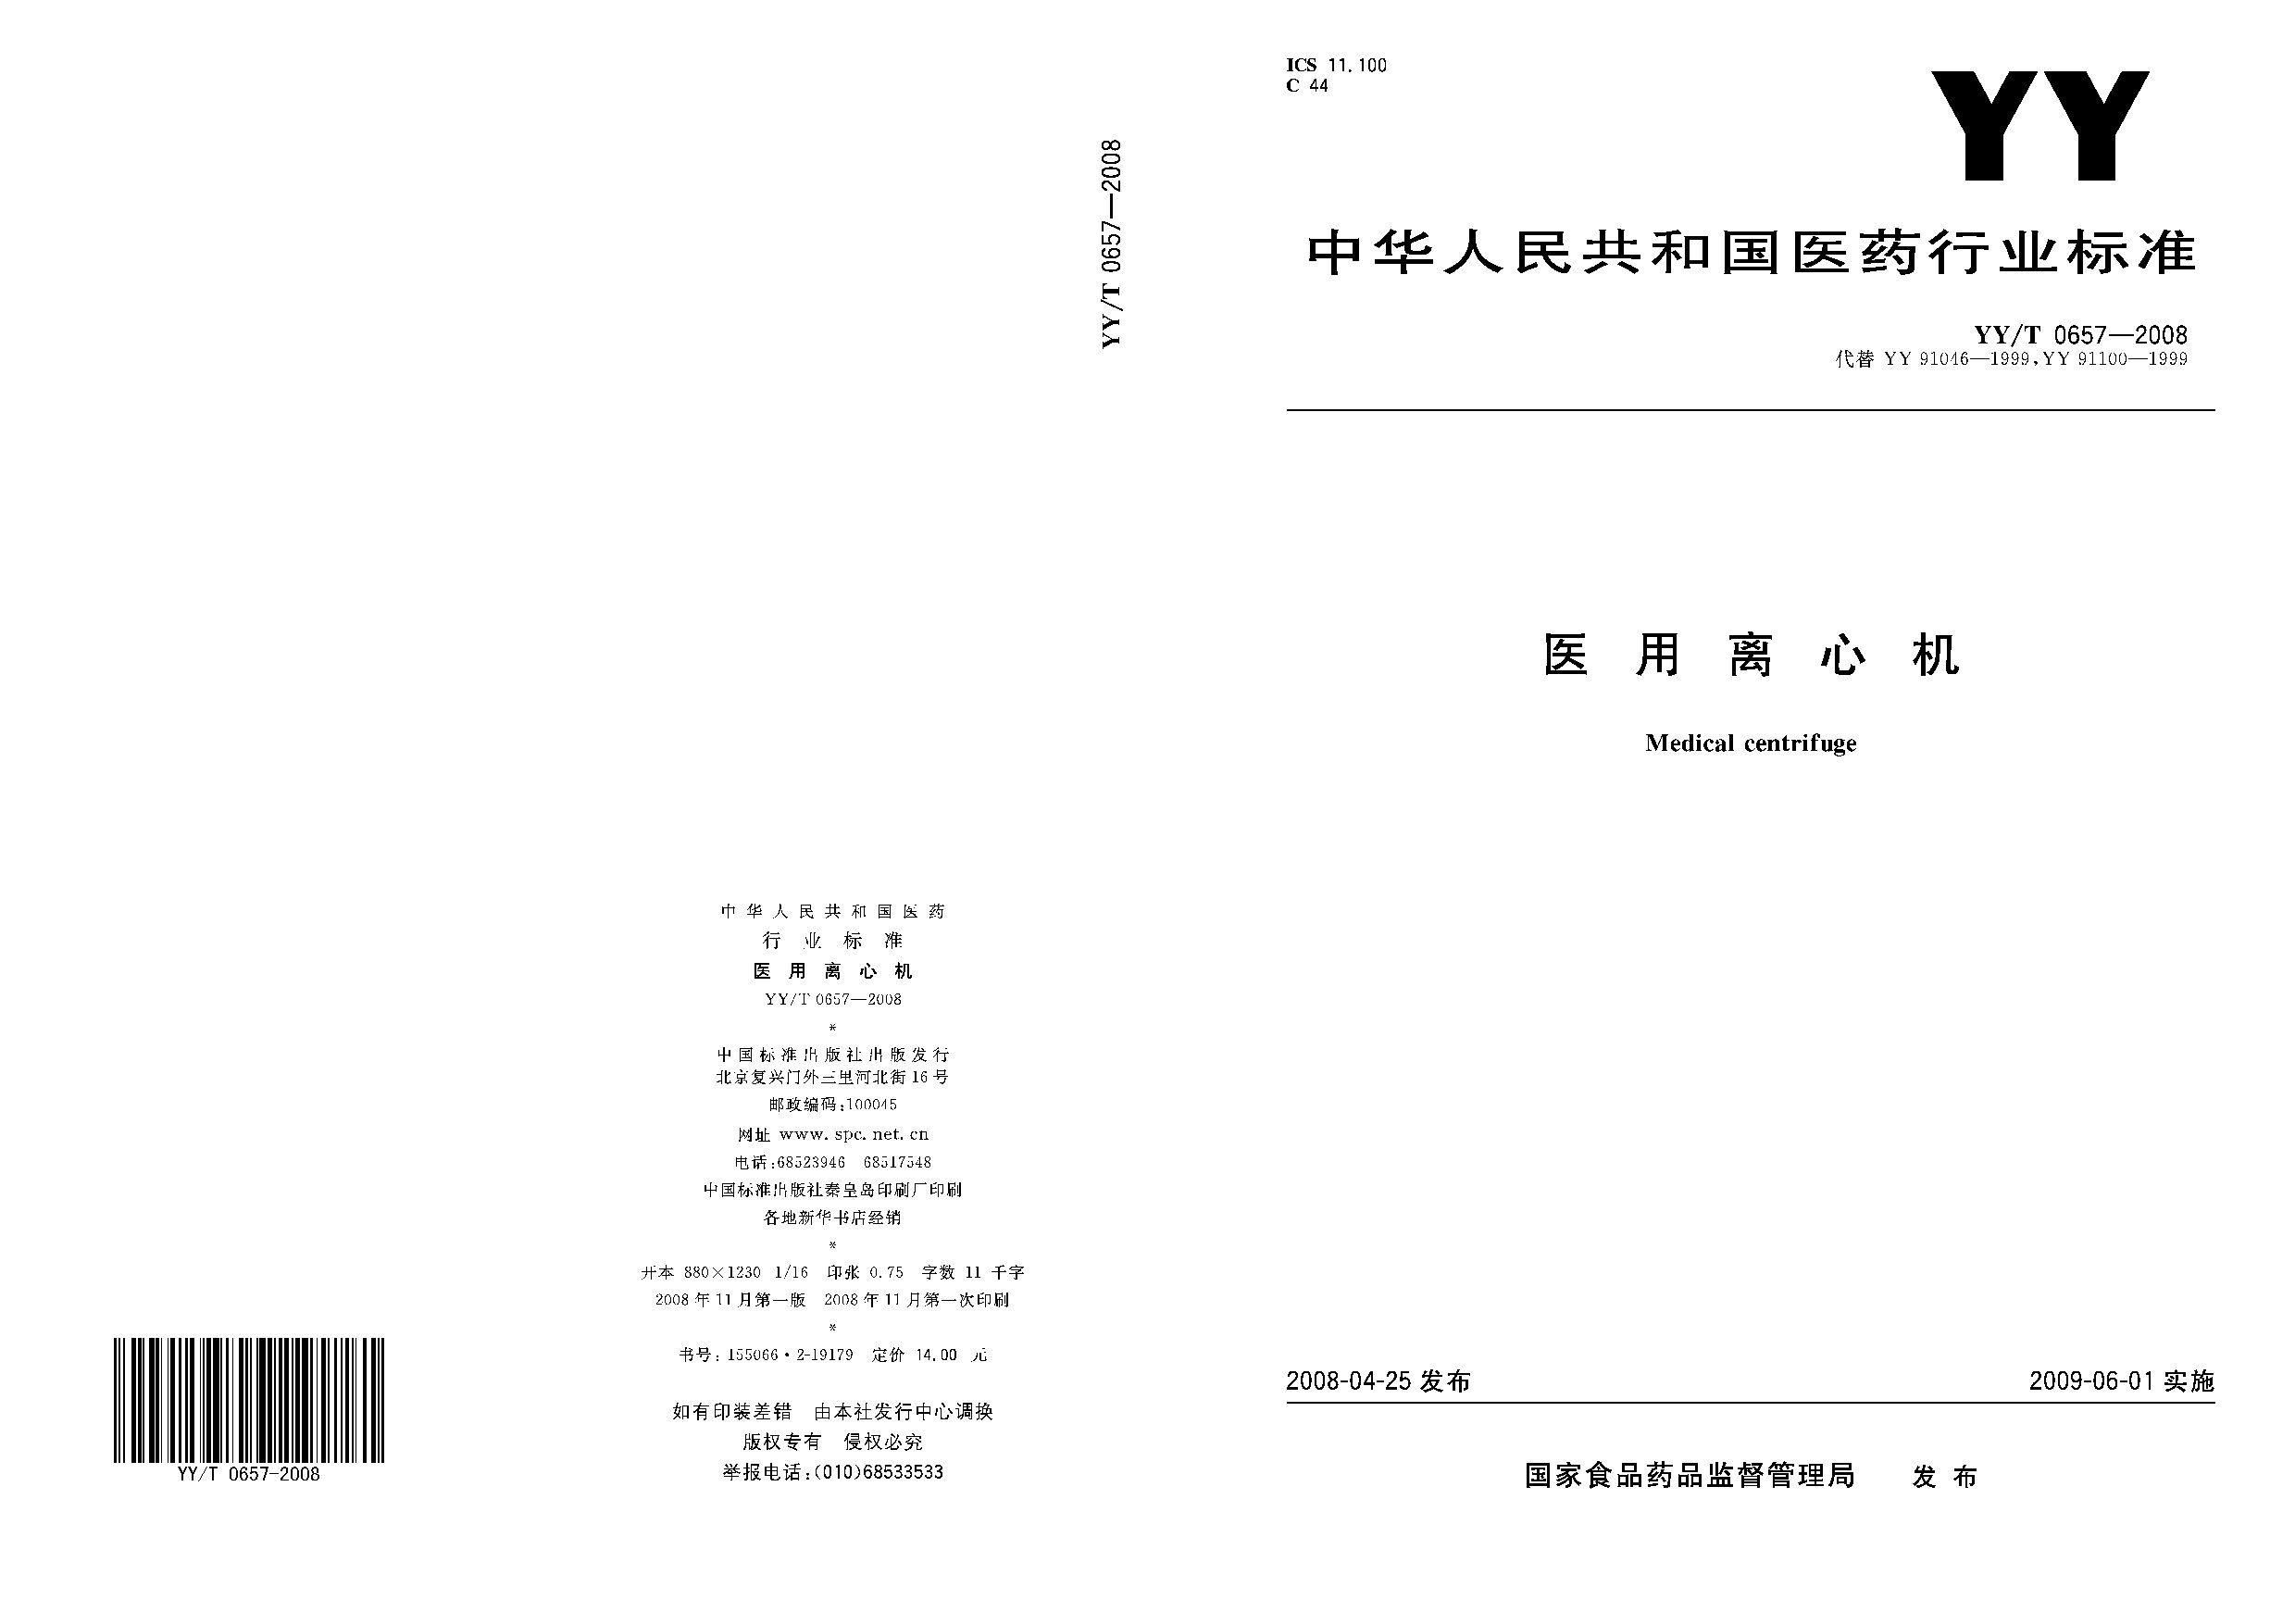 YY/T 0657-2008封面图